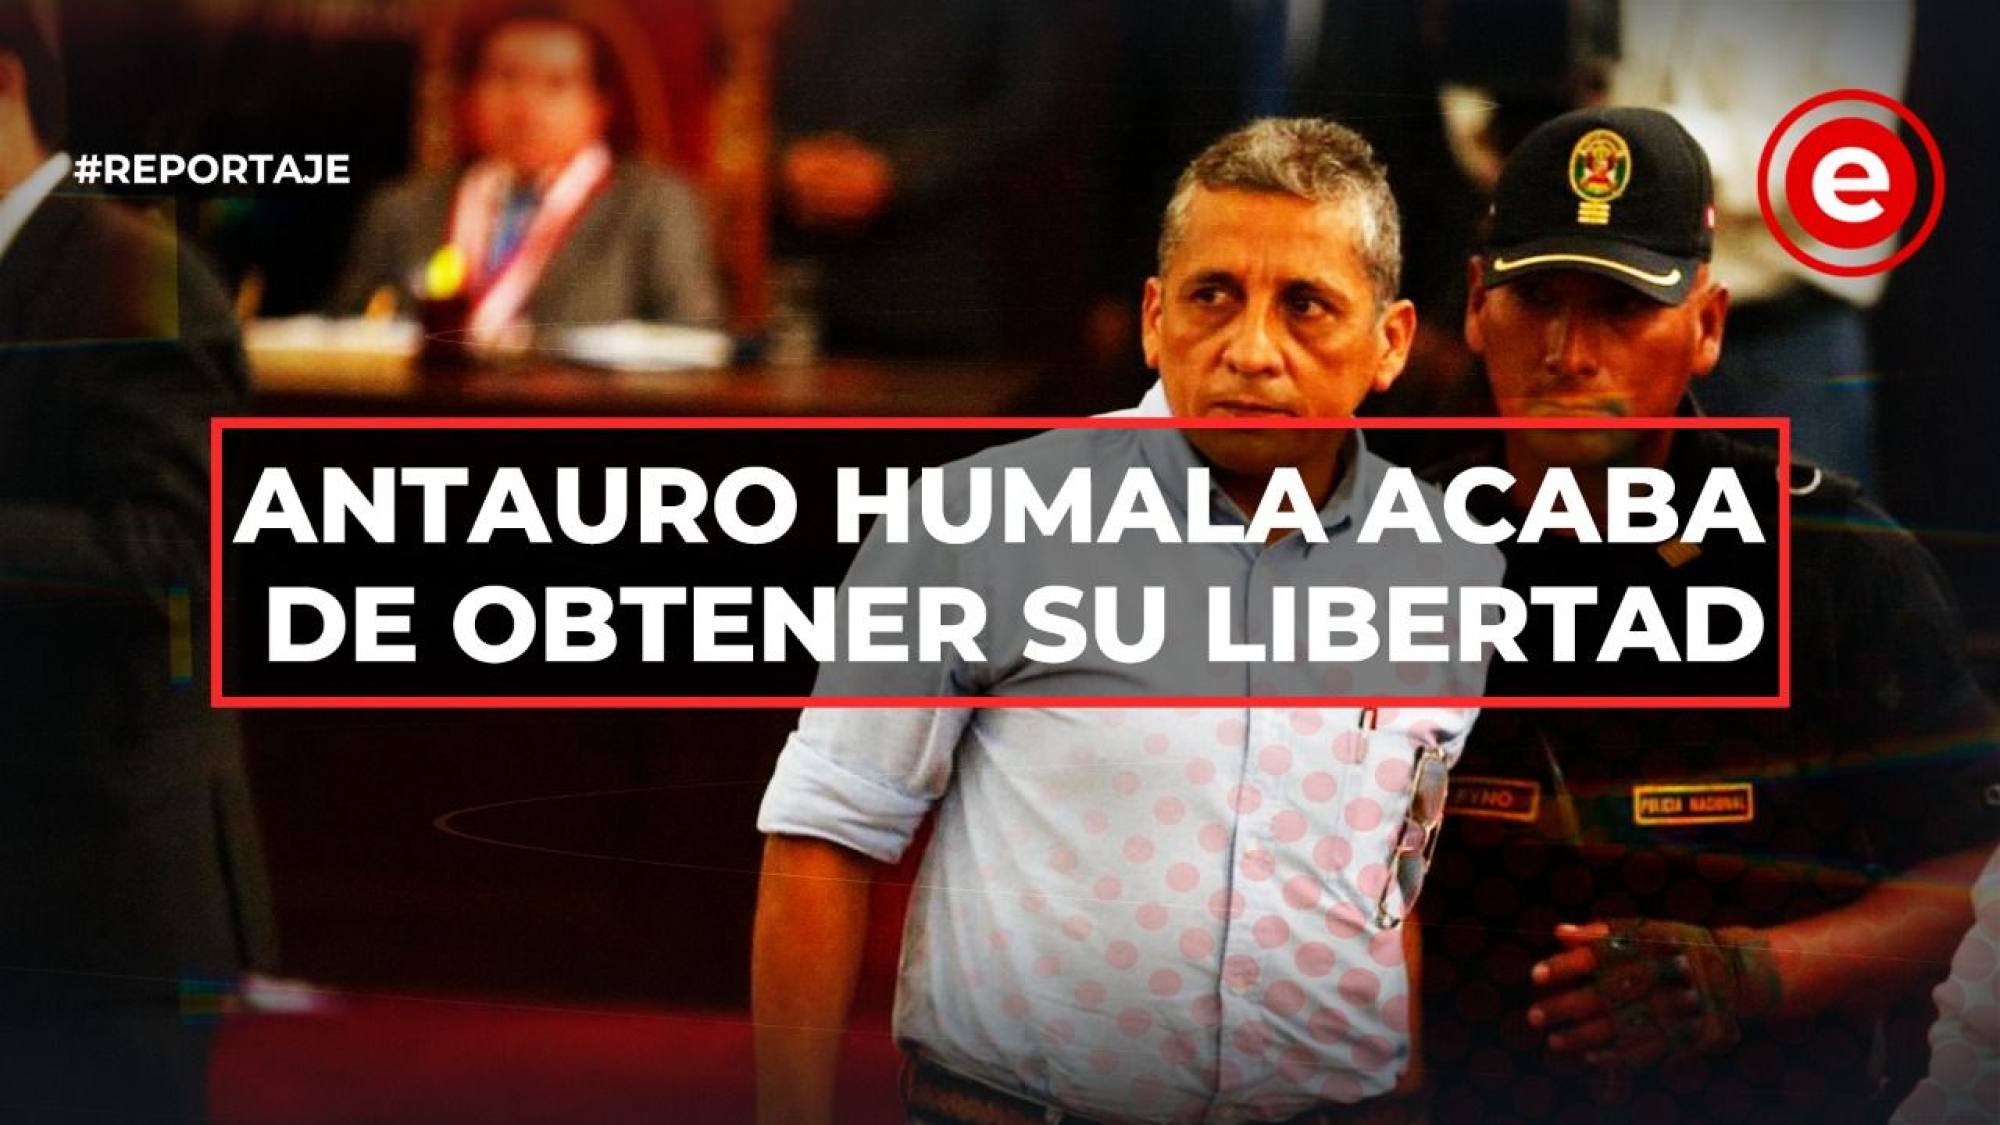 Antauro Humala acaba de obtener su libertad, Epicentro TV